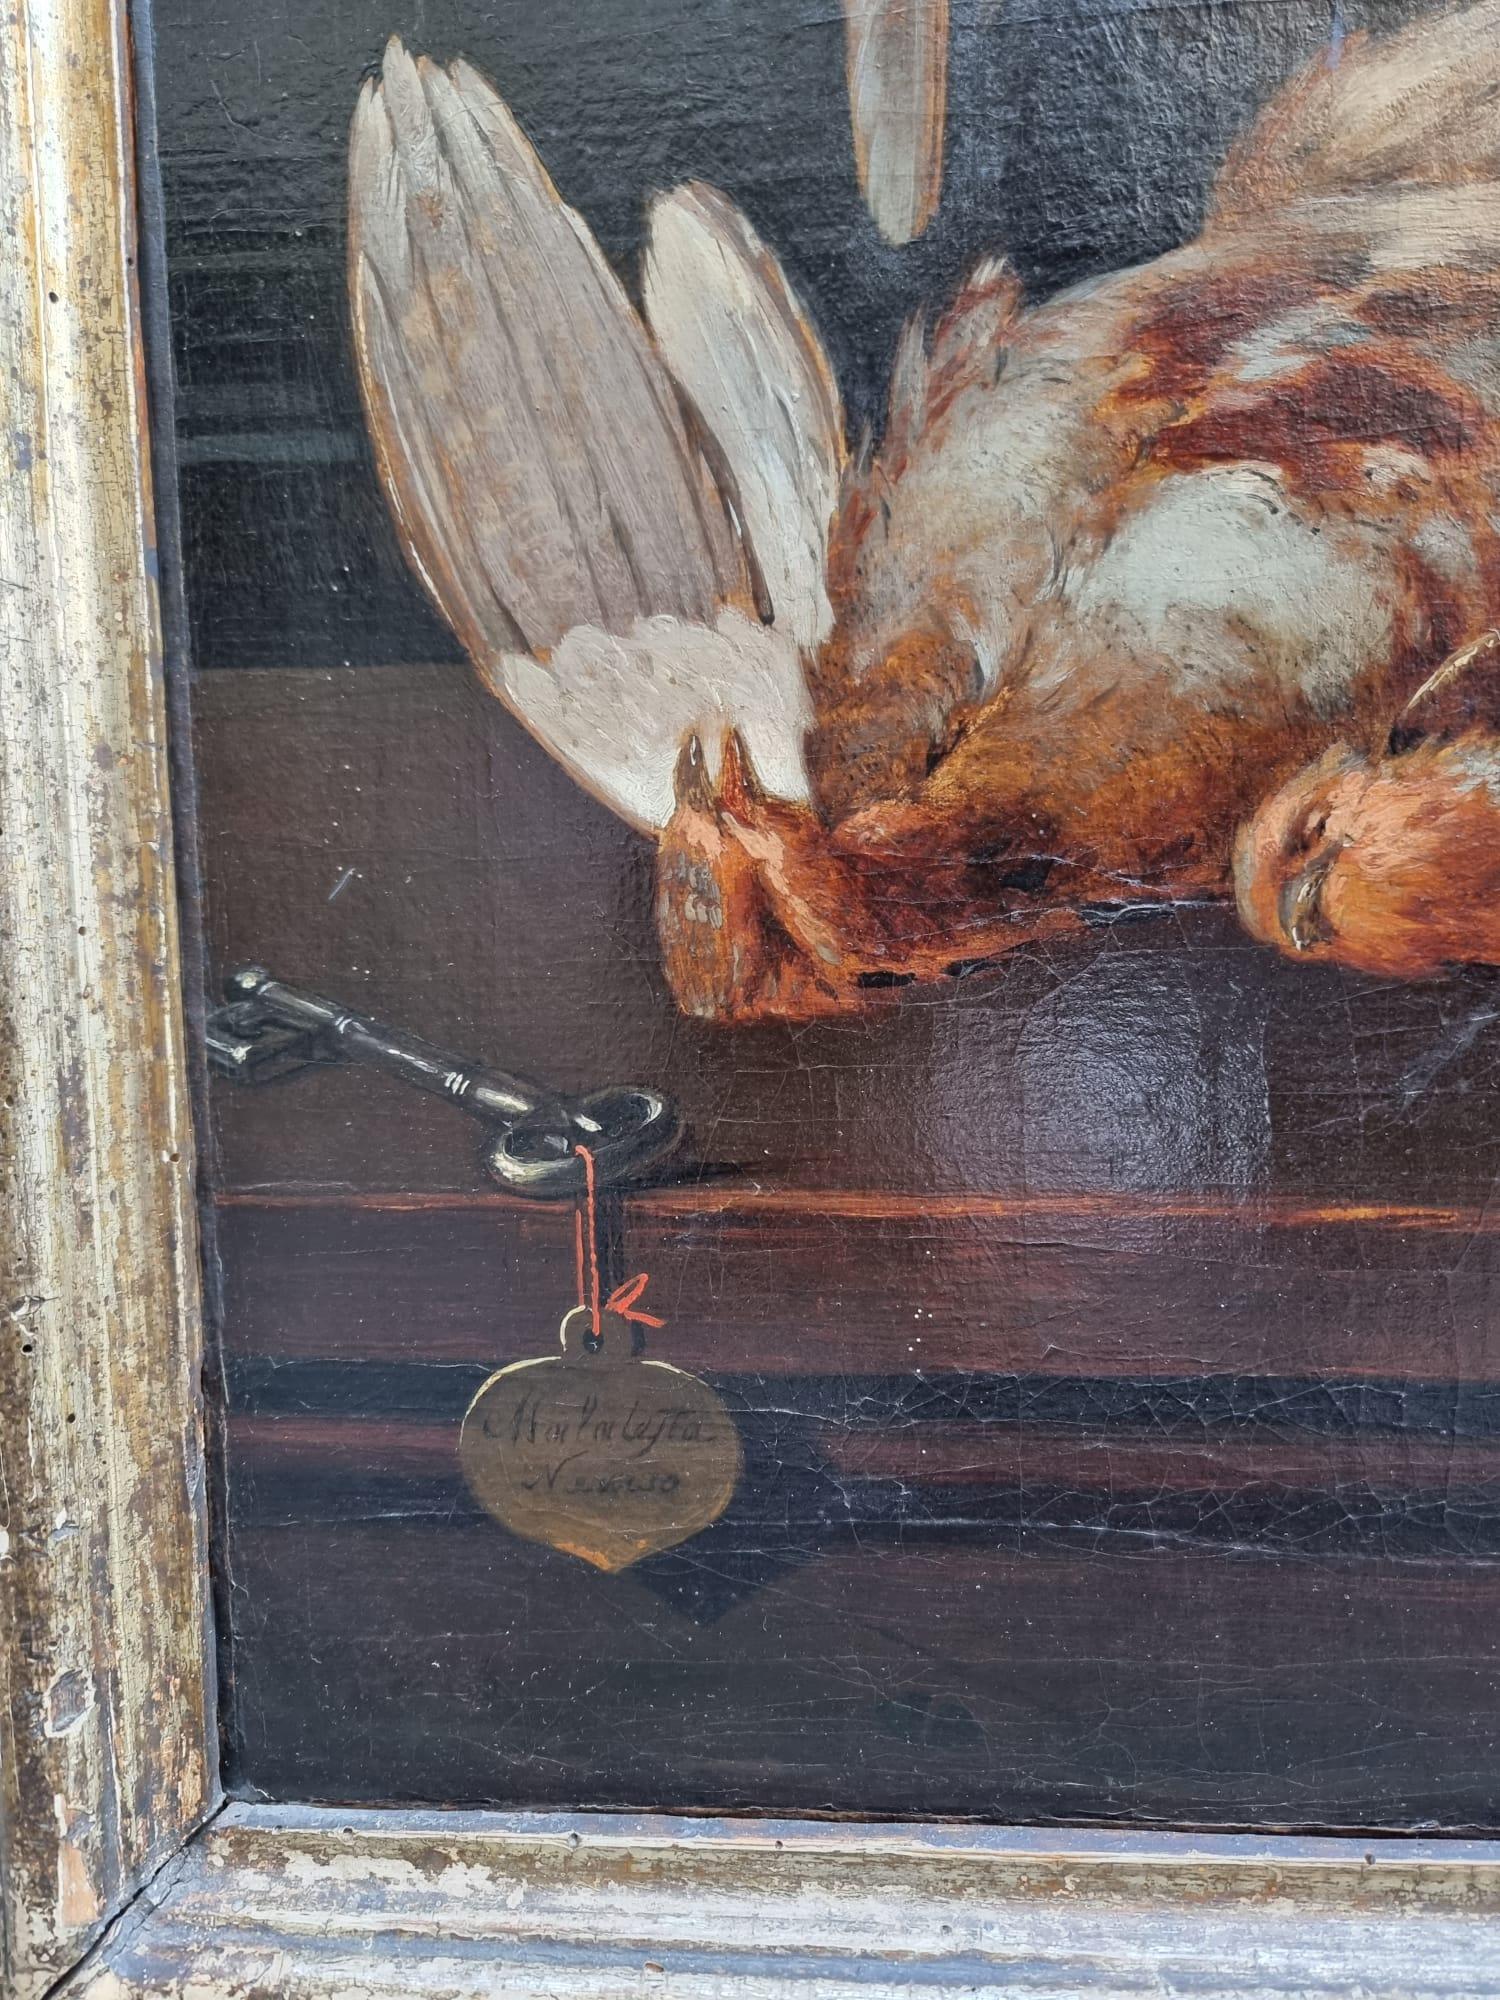 Italian 19th Century Still Life with Dead Birds